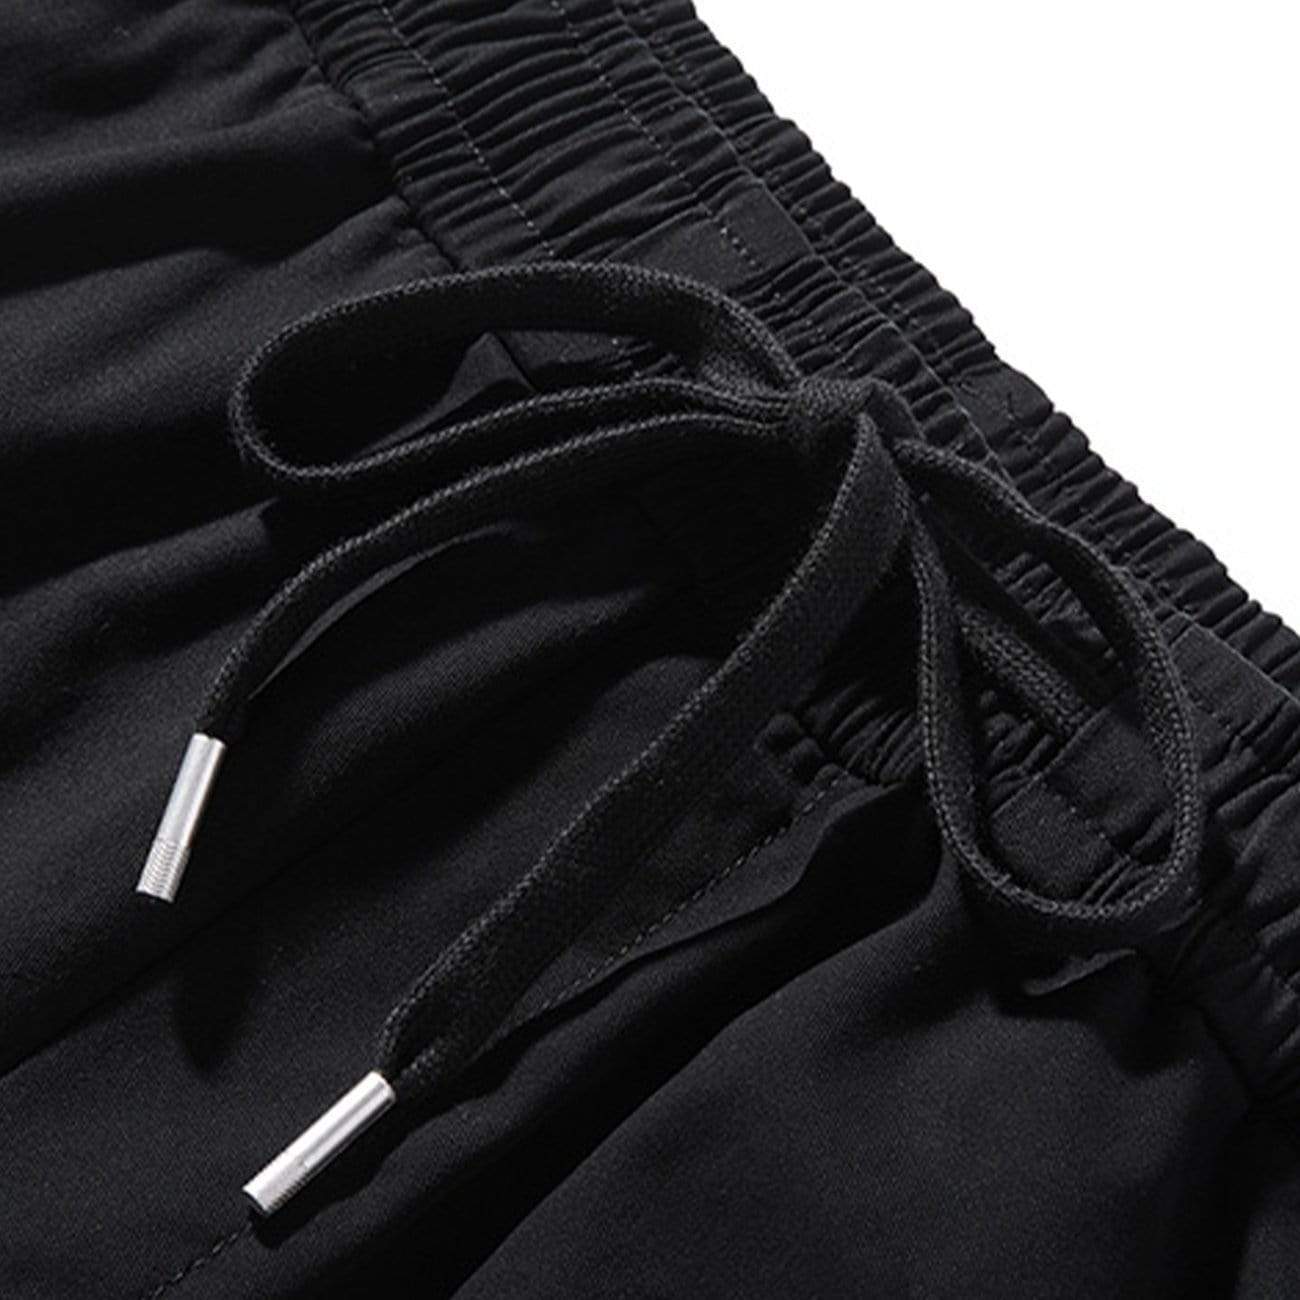 WLS Three-dimensional Zipper Pockets Cargo Pants